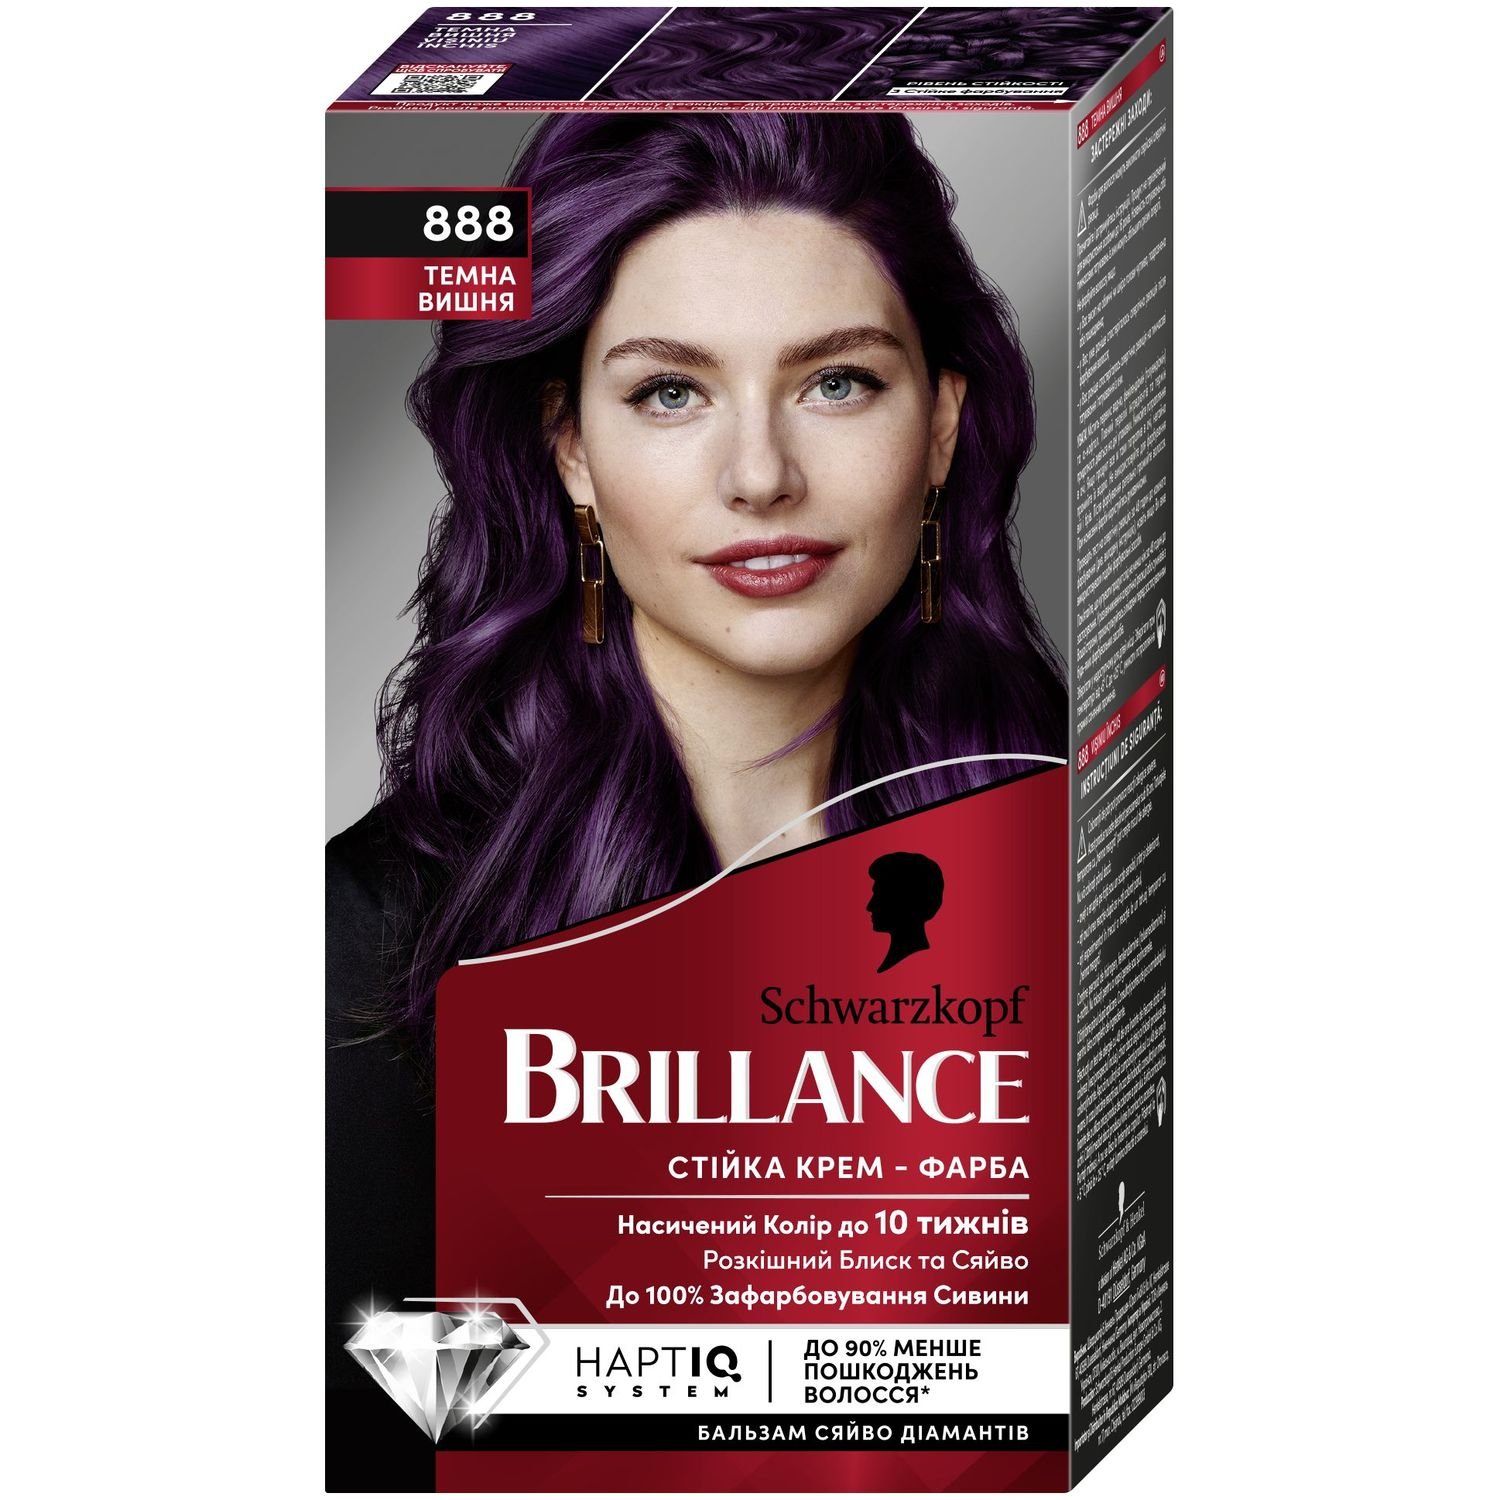 Фарба для волосся Brillance 888 Темна вишня, 143,7 мл (2025004) - фото 1